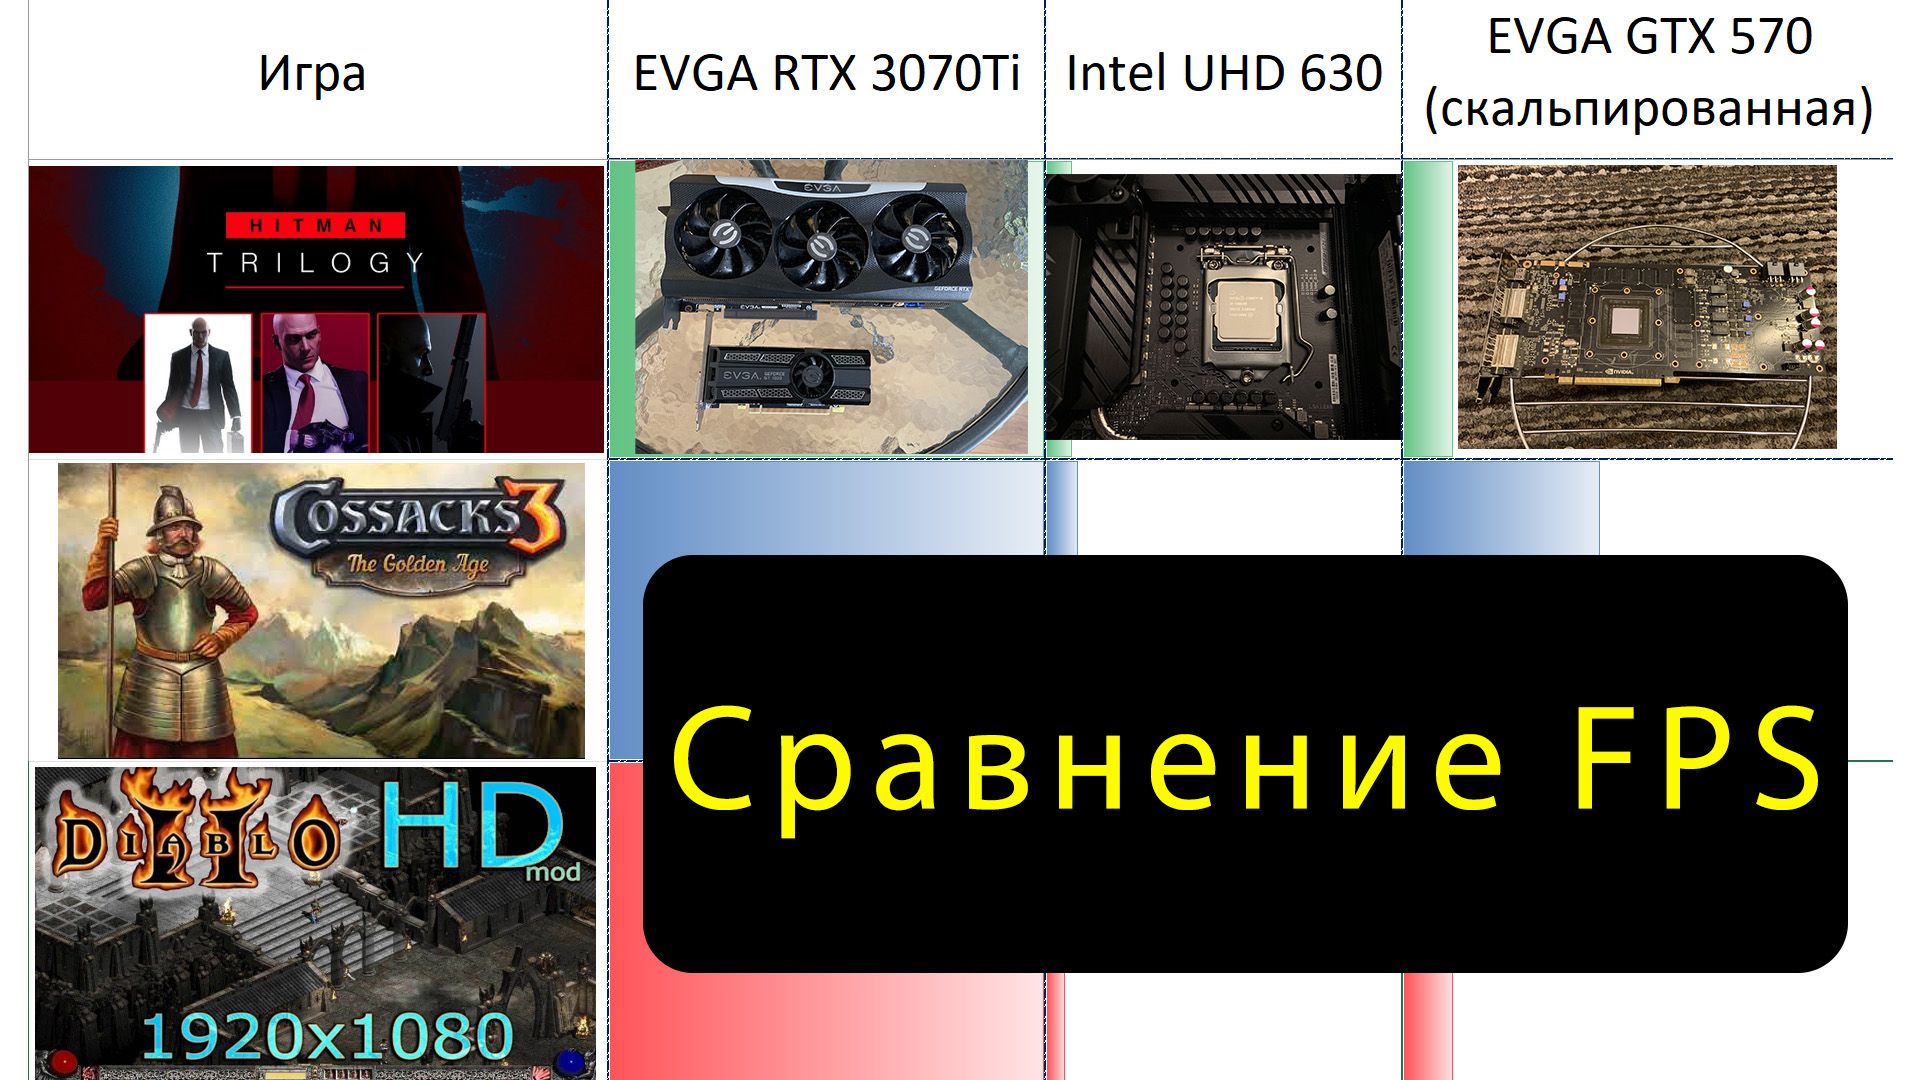 2024-03-21 FPS в старых, новых и Remastered играх на видеокартах EVGA RTX 3070Ti, Intel UHD 630 и EVGA GTX 570